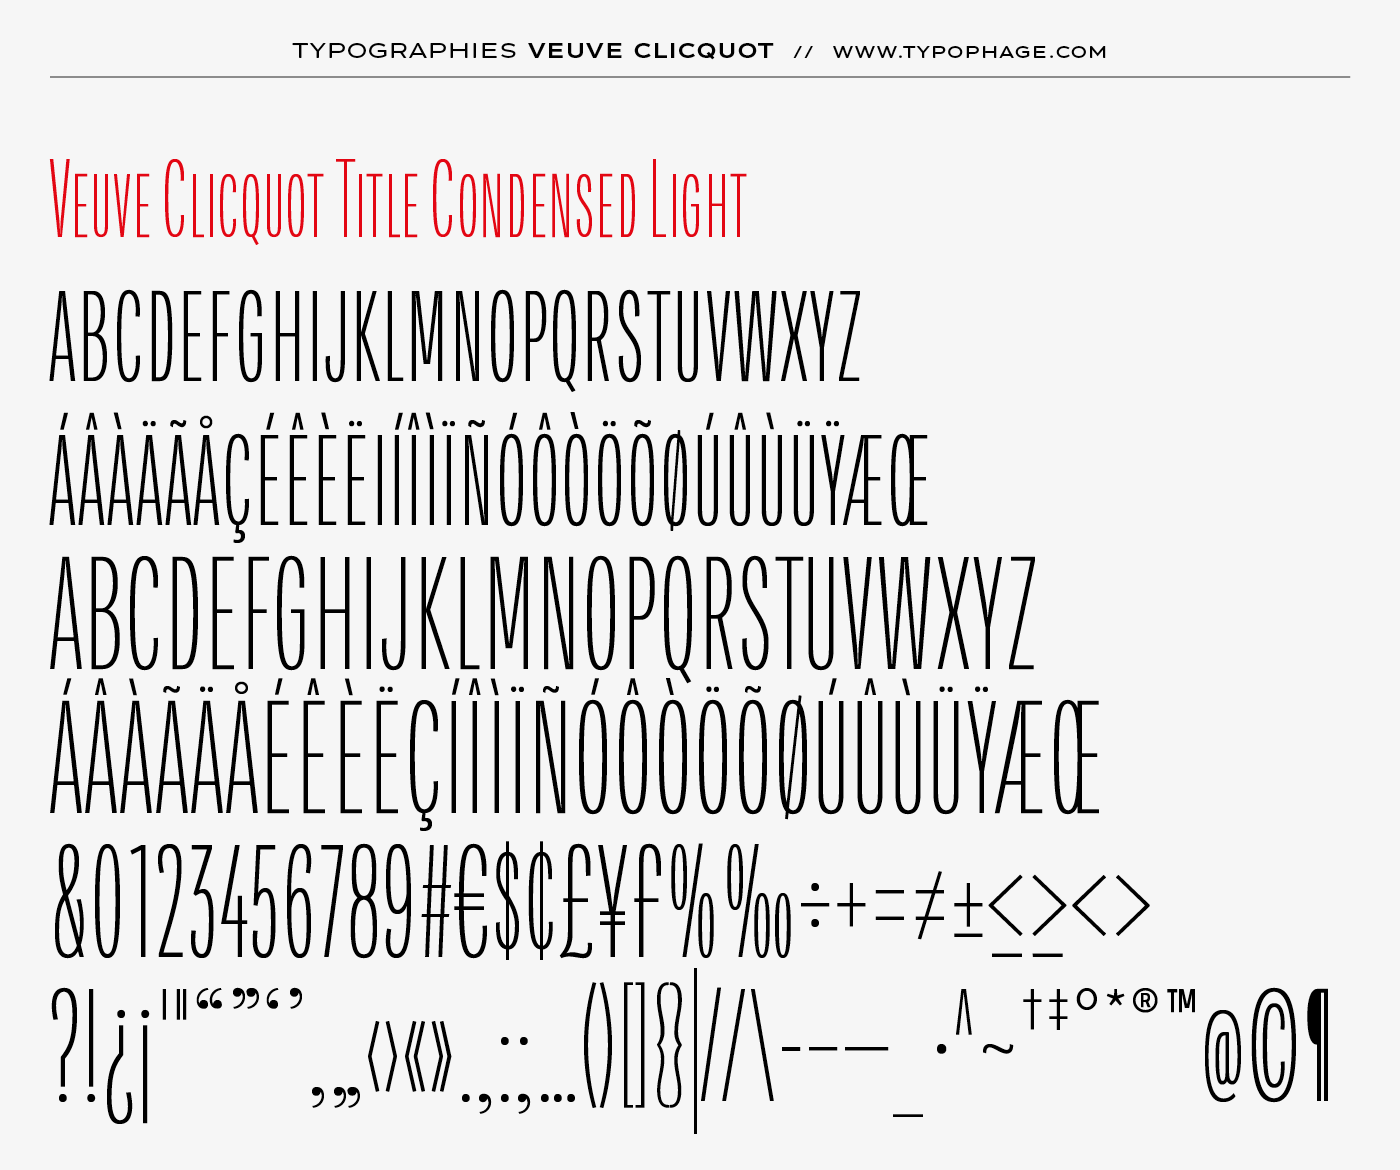 Typographie exclusive Veuve Clicquot Ponsardin. Alphabet sur mesure, typographie d'identité. Specimen de caractères typographiques.